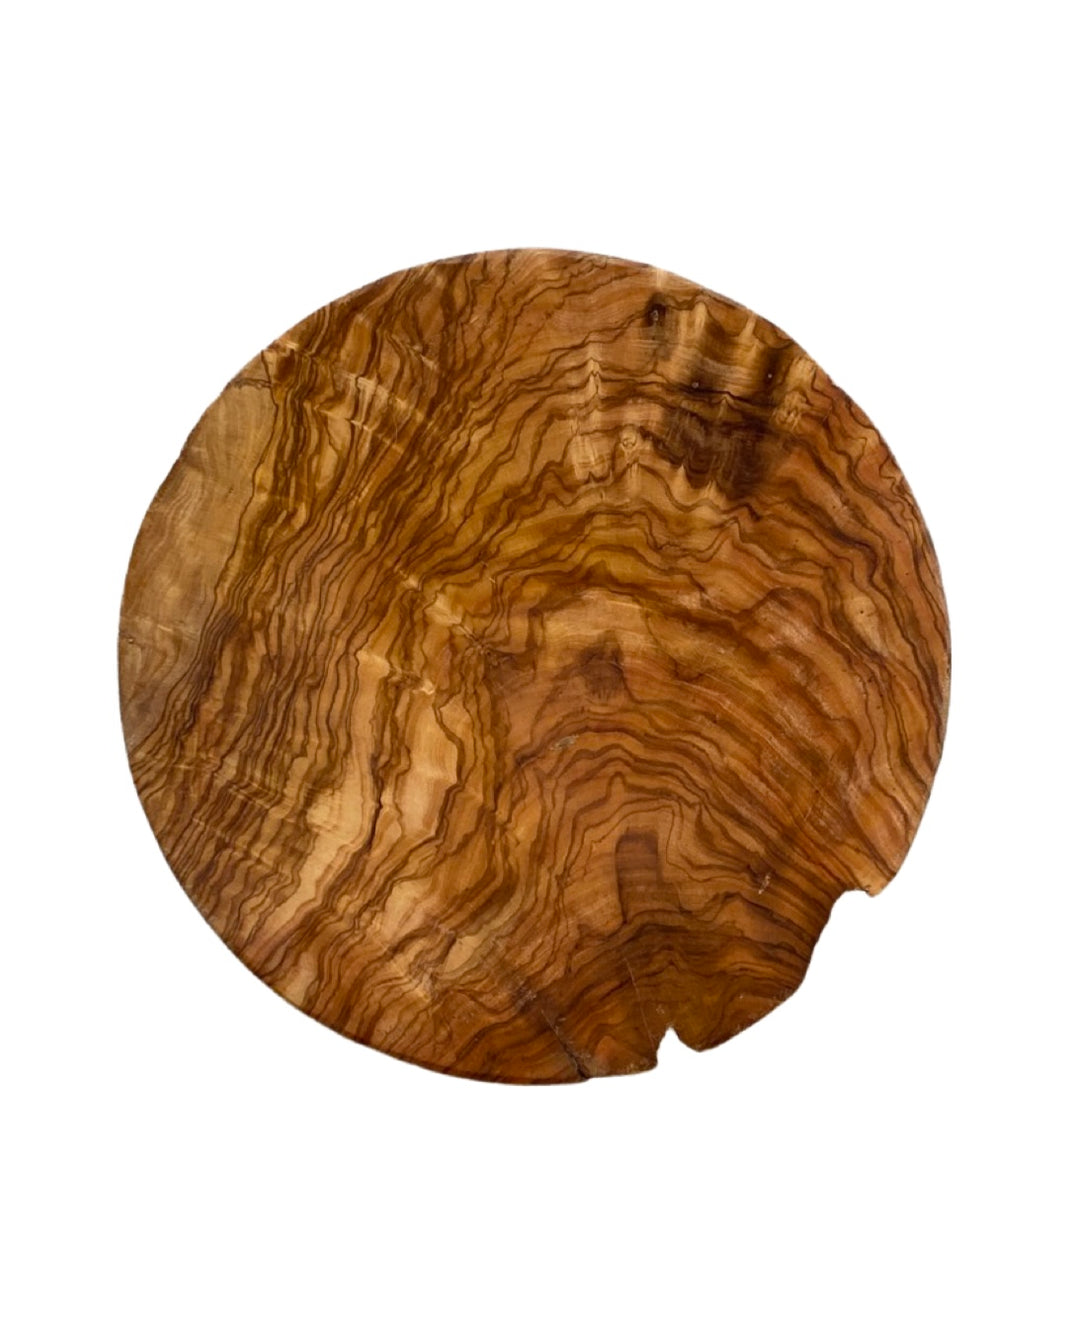 Natural olive wood serving platter